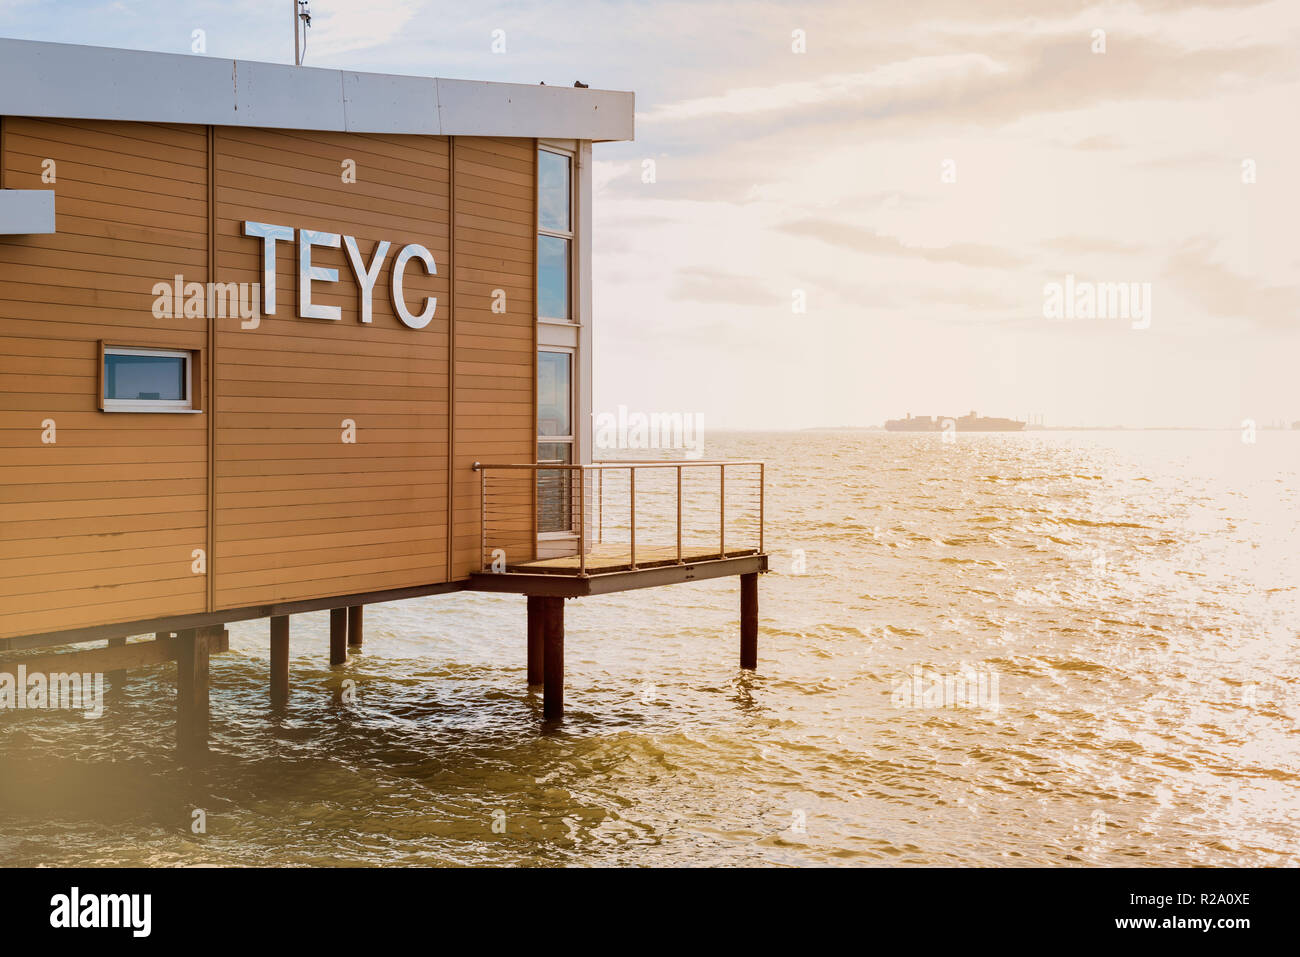 TEYC, Thames Estuary Yacht Club, club edificio construido sobre pilotes al borde del agua. Casa Club en la playa, Foto de stock